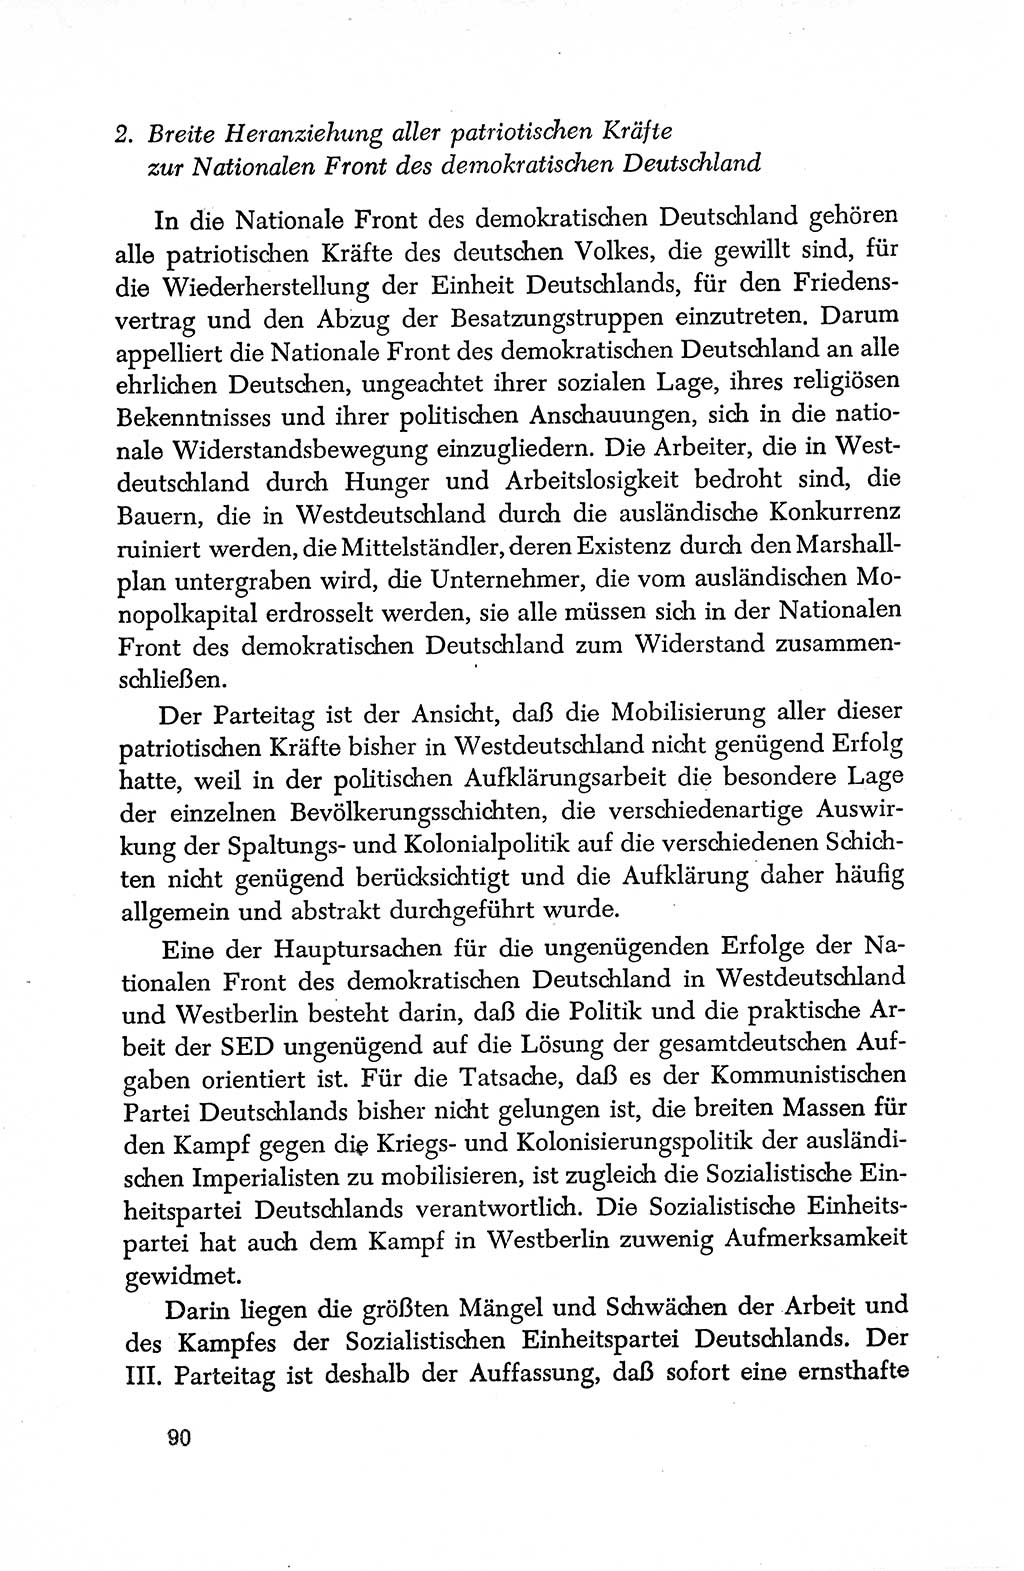 Dokumente der Sozialistischen Einheitspartei Deutschlands (SED) [Deutsche Demokratische Republik (DDR)] 1950-1952, Seite 90 (Dok. SED DDR 1950-1952, S. 90)